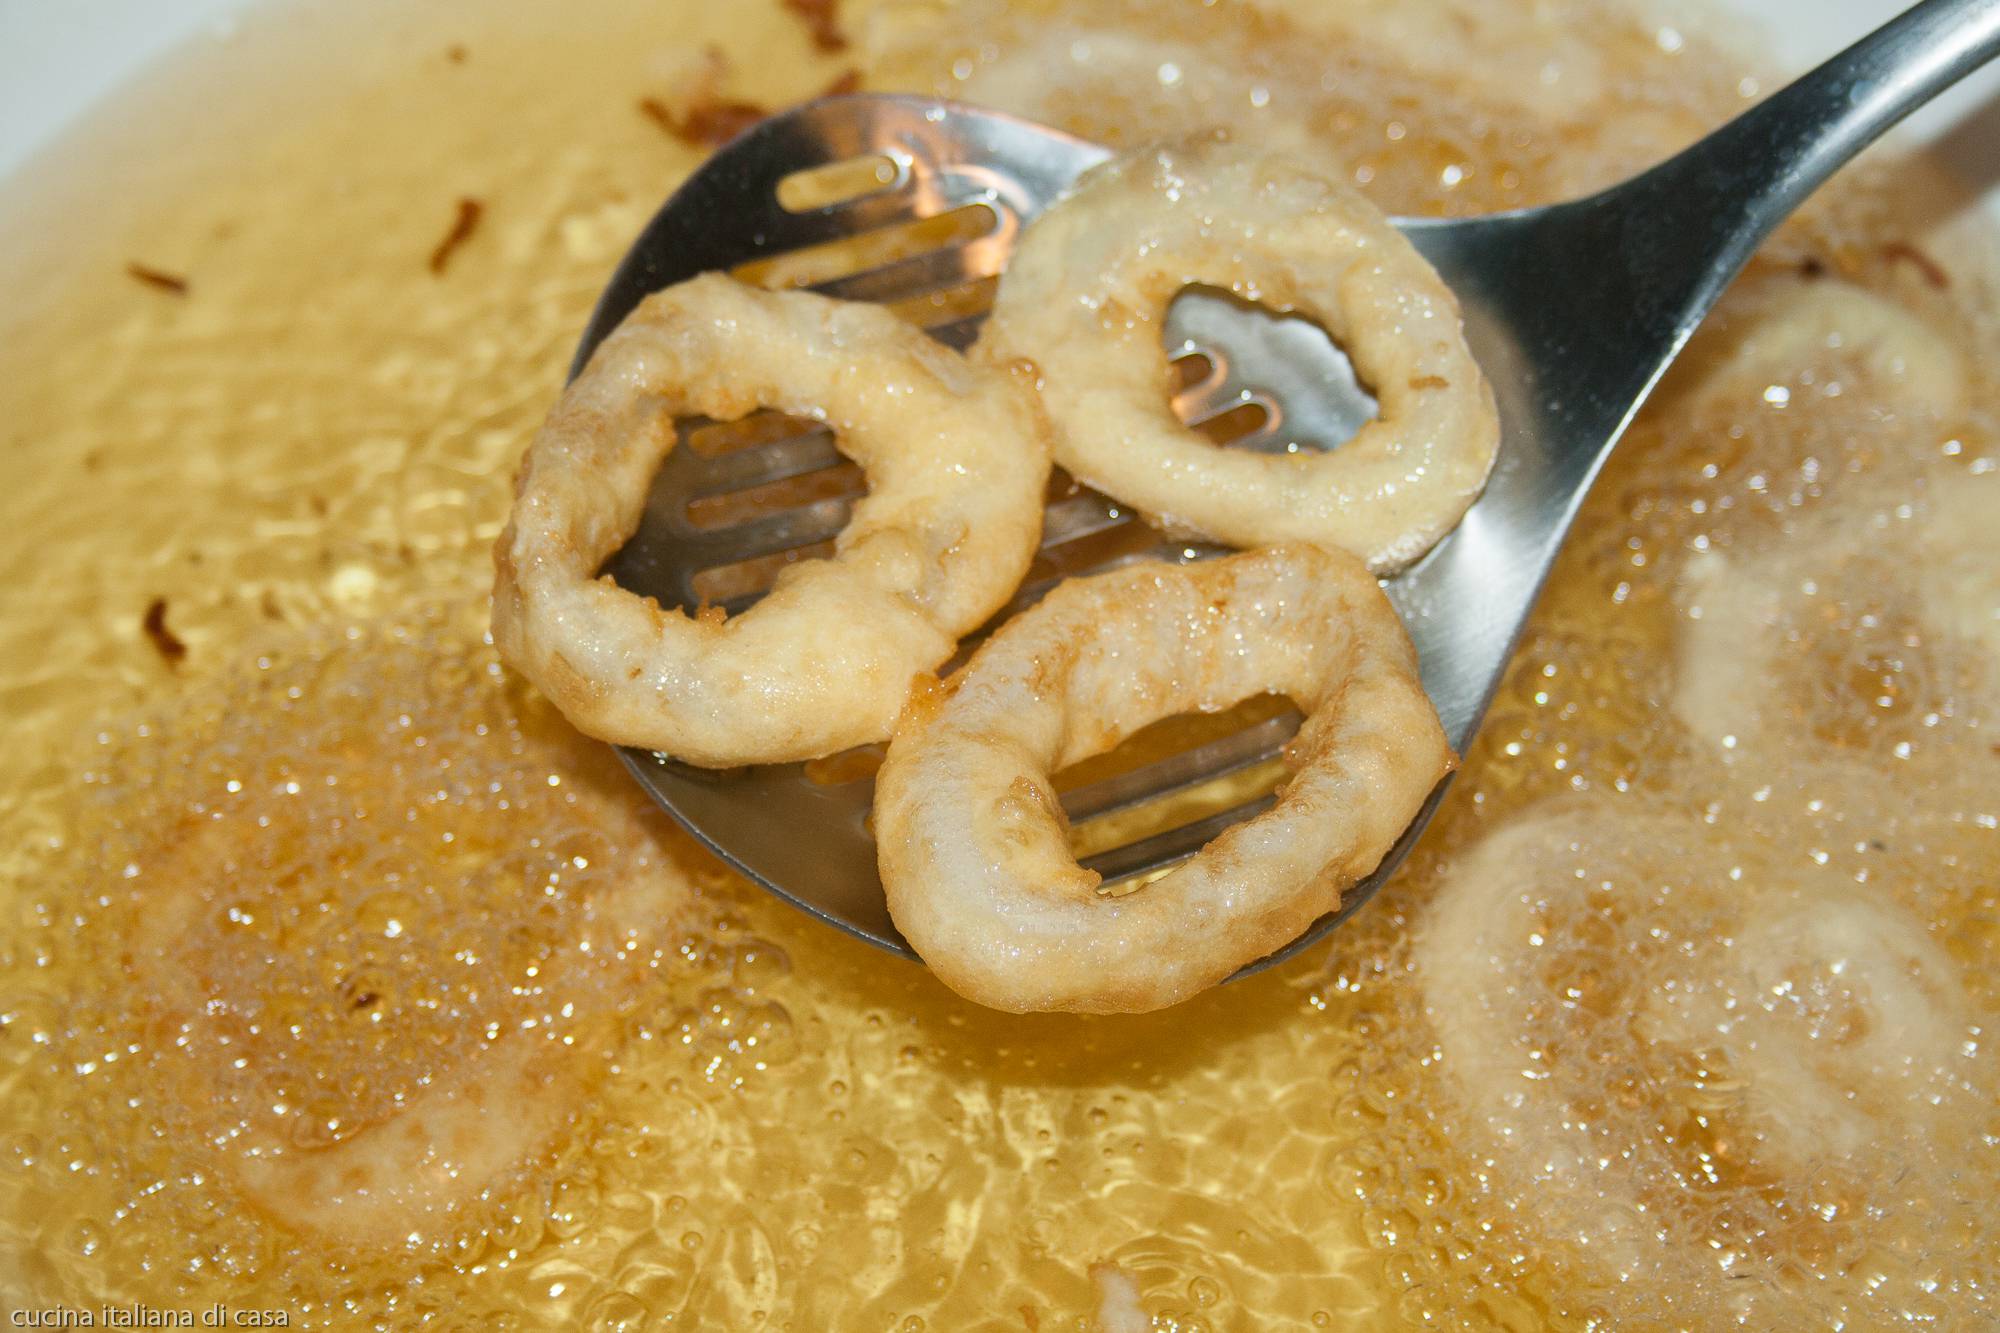 estrarre anelli calamaro fritti alla romana da olio